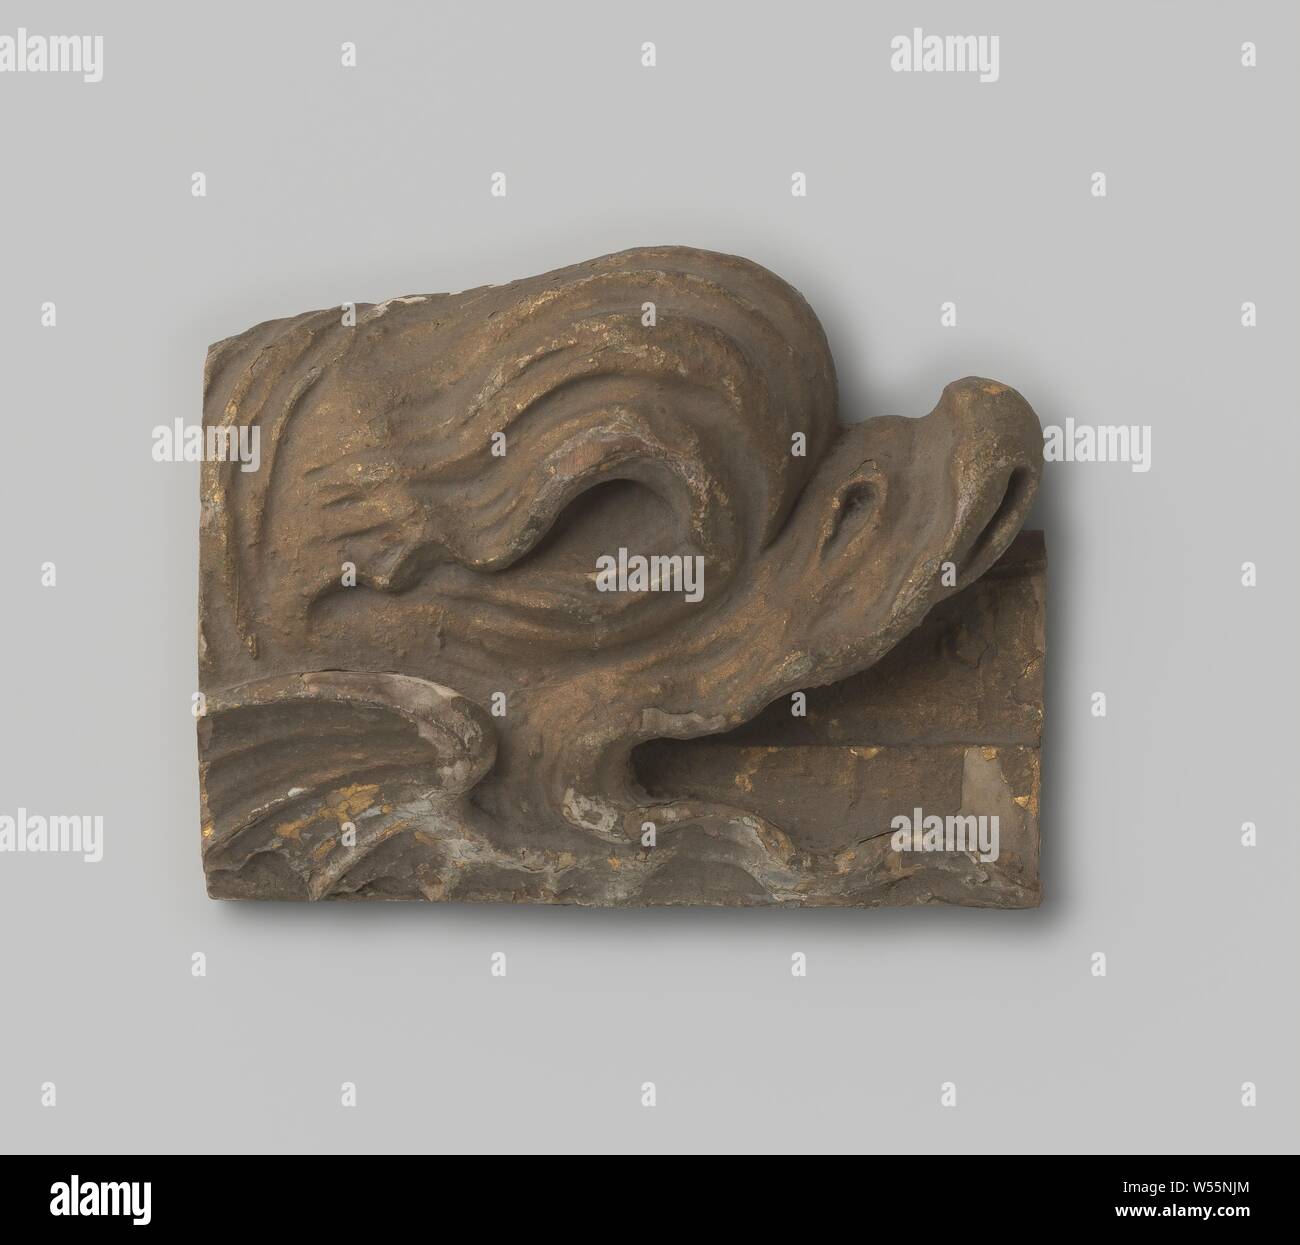 Frammento di costruzione, Carving realizzata in legno di tiglio (?) dorato. Testa di un flying fish., anonimo, c. 1400 - c. 1950, tiglio, doratura (materiale), doratura, h 13 cm × W 10 cm × d 4 cm Foto Stock